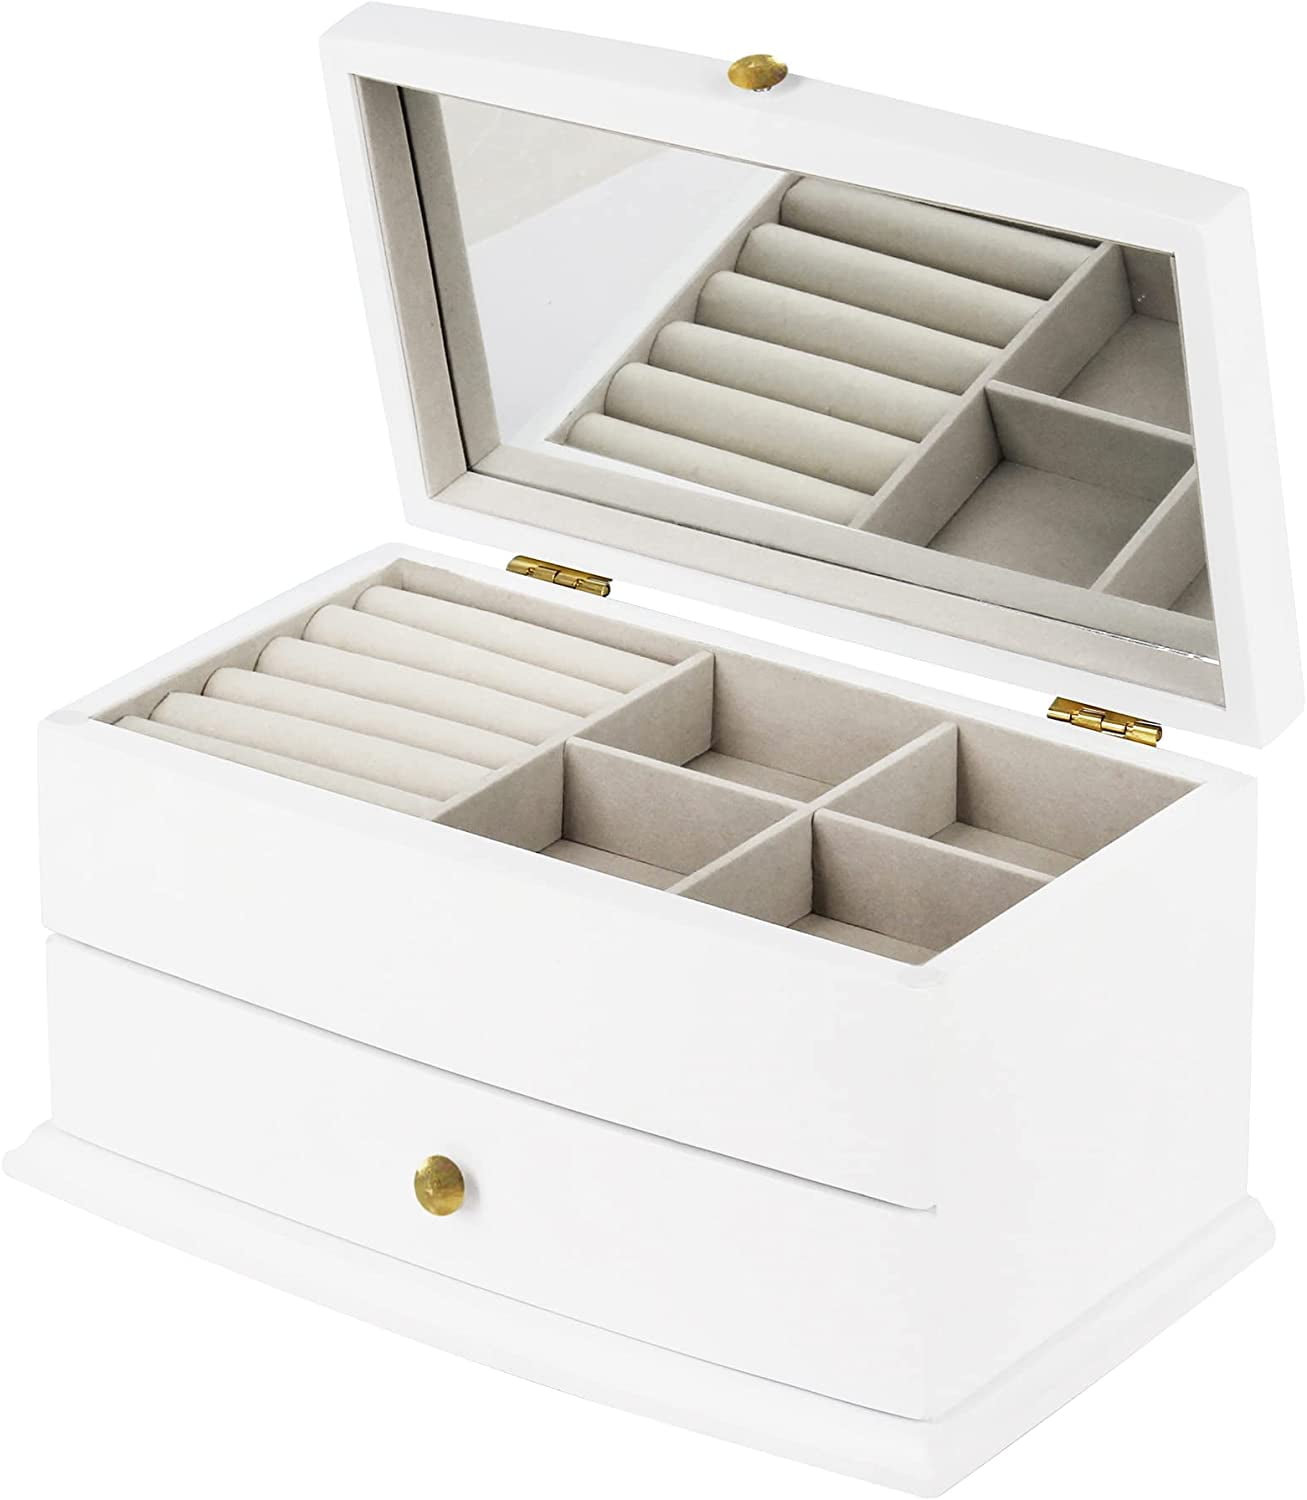 Leejay Wood Jewelry Box with 2 drawer ,Organizer Storage Case with ...